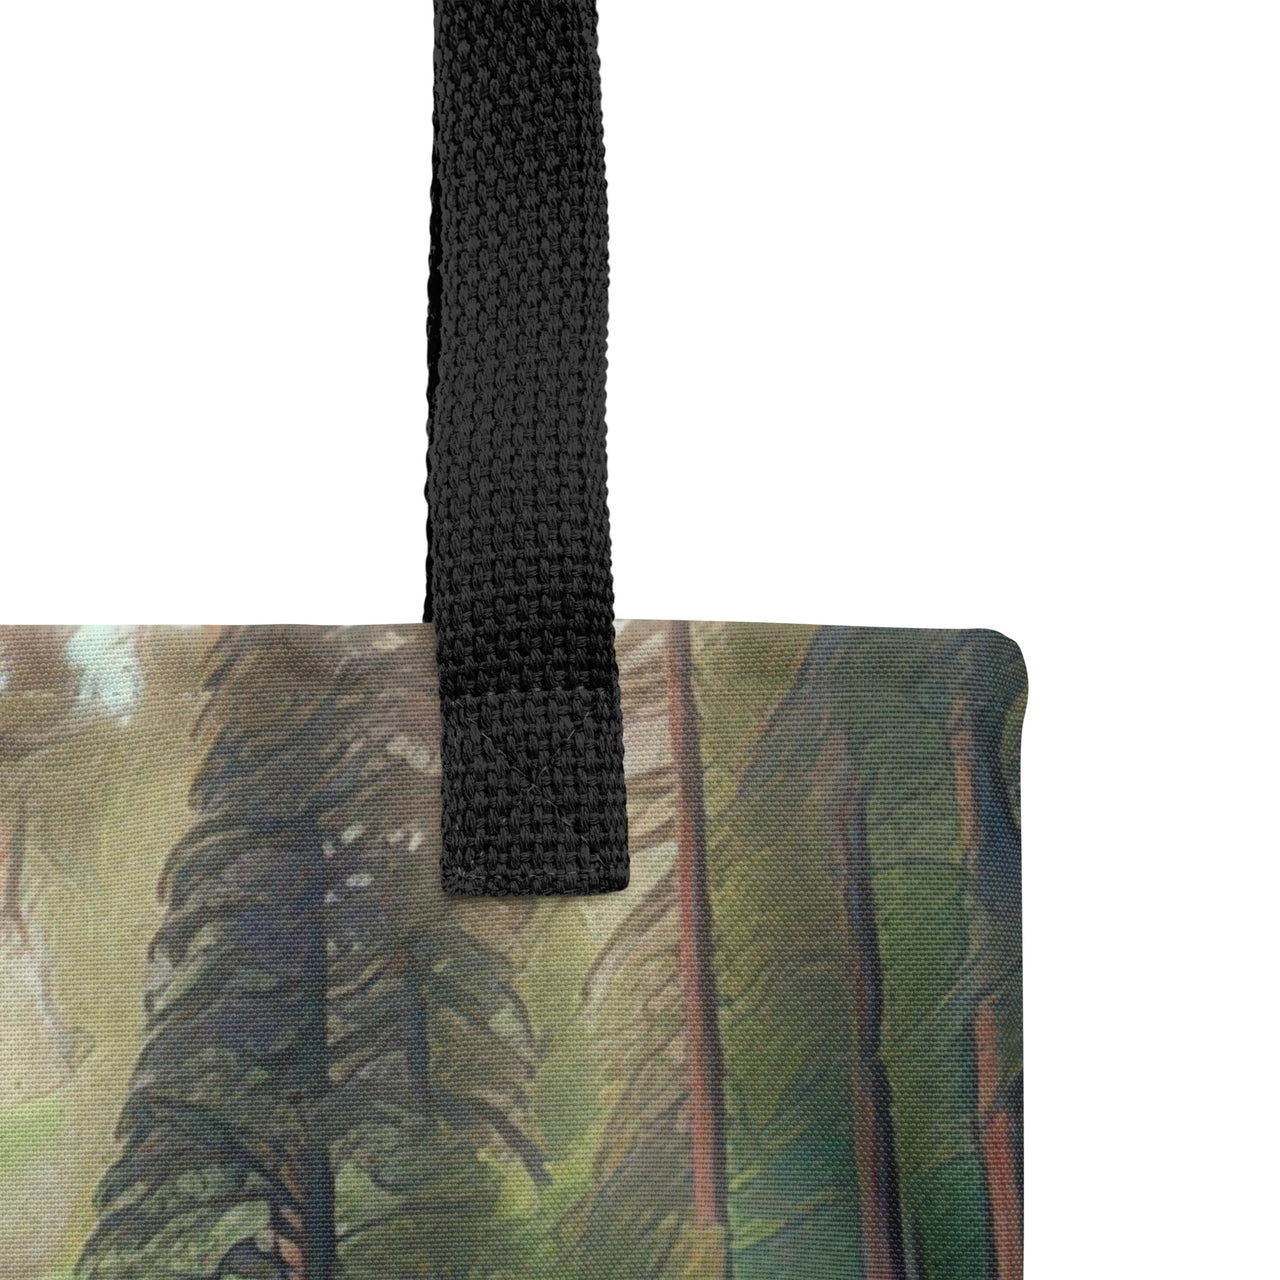 Multnomah Falls - Digital Art - Tote bag